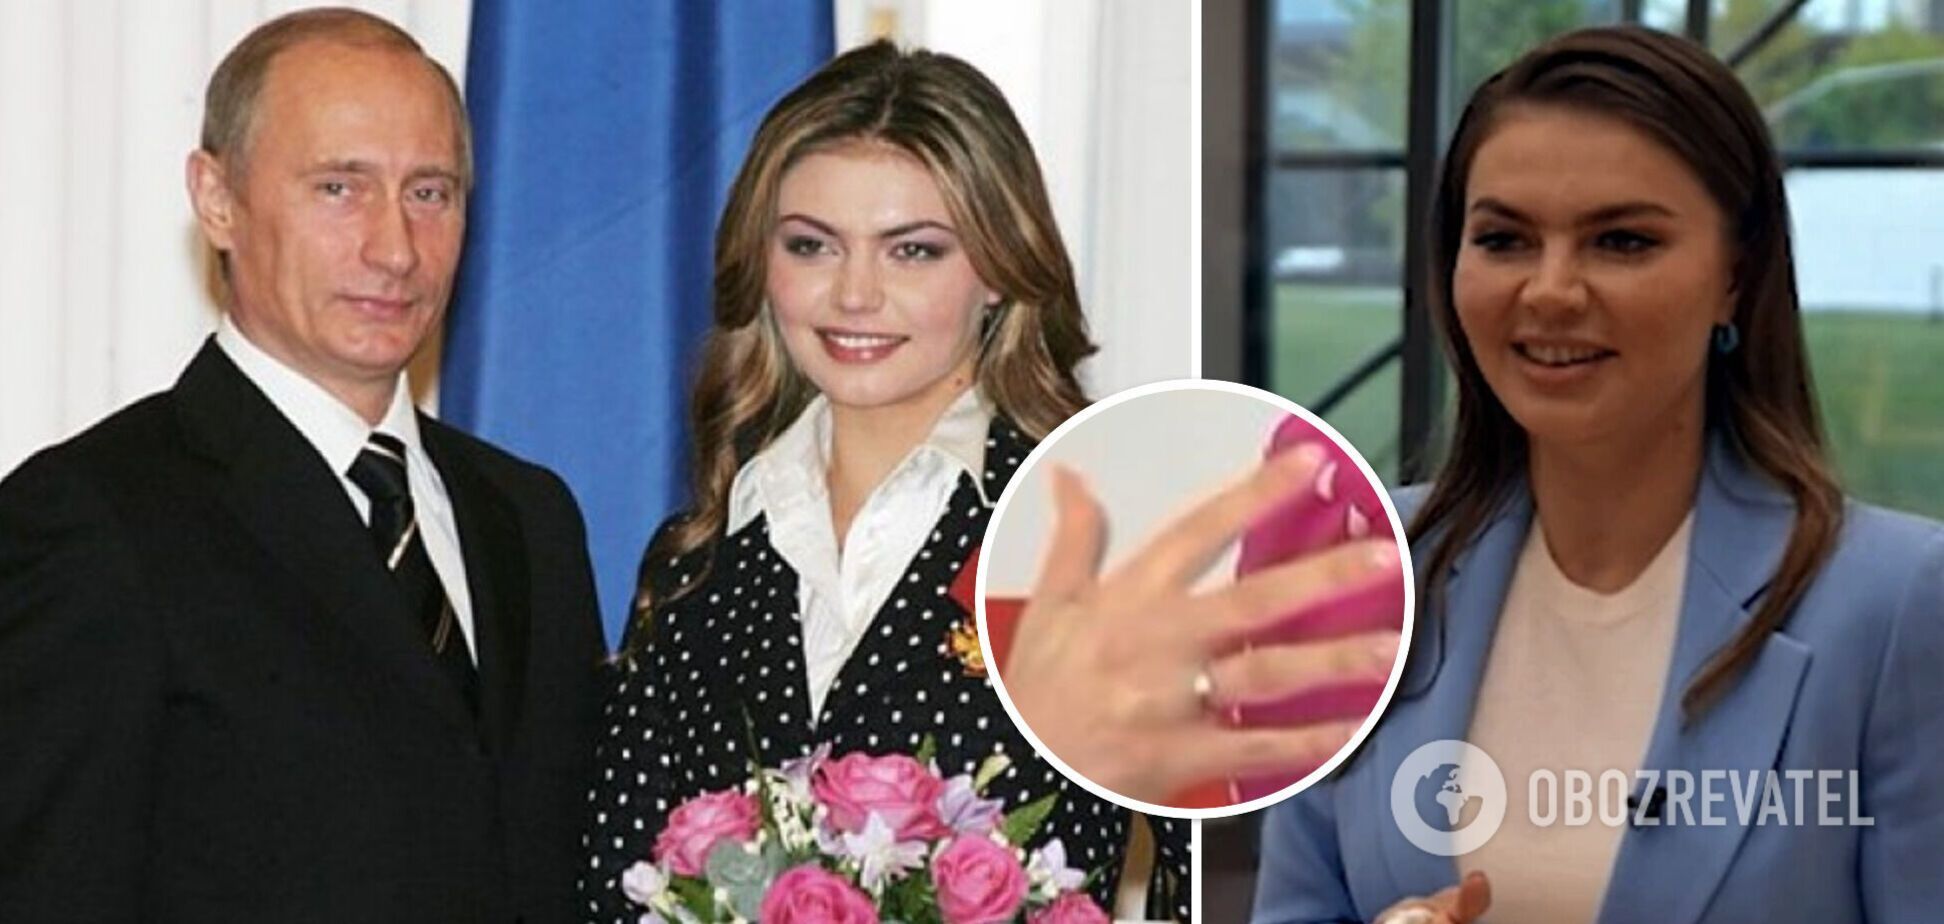 'Тайная любовница Путина' Кабаева удивила изменениями во внешности и засветила обручальное кольцо: пропагандисты отметили один 'нюанс'